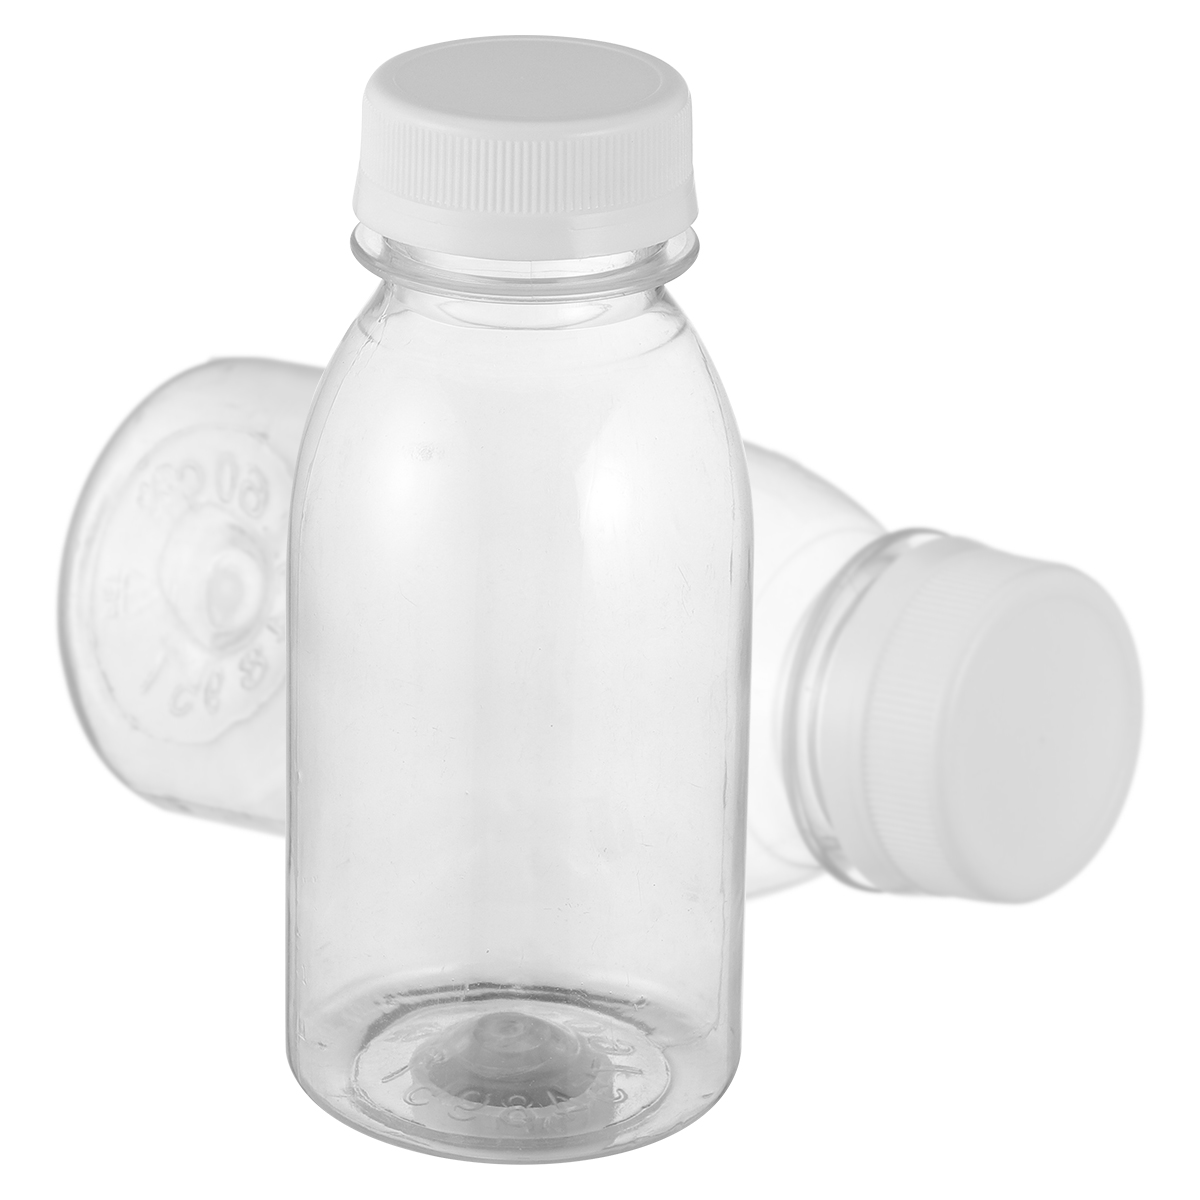 Frcolor Bottles Juice Mini Water Fridge Containers Box Juicing Lids Refillable Empty Clear Reusable Shot Caps oz 4 Small Bottle, Size: 13.5X6X6CM